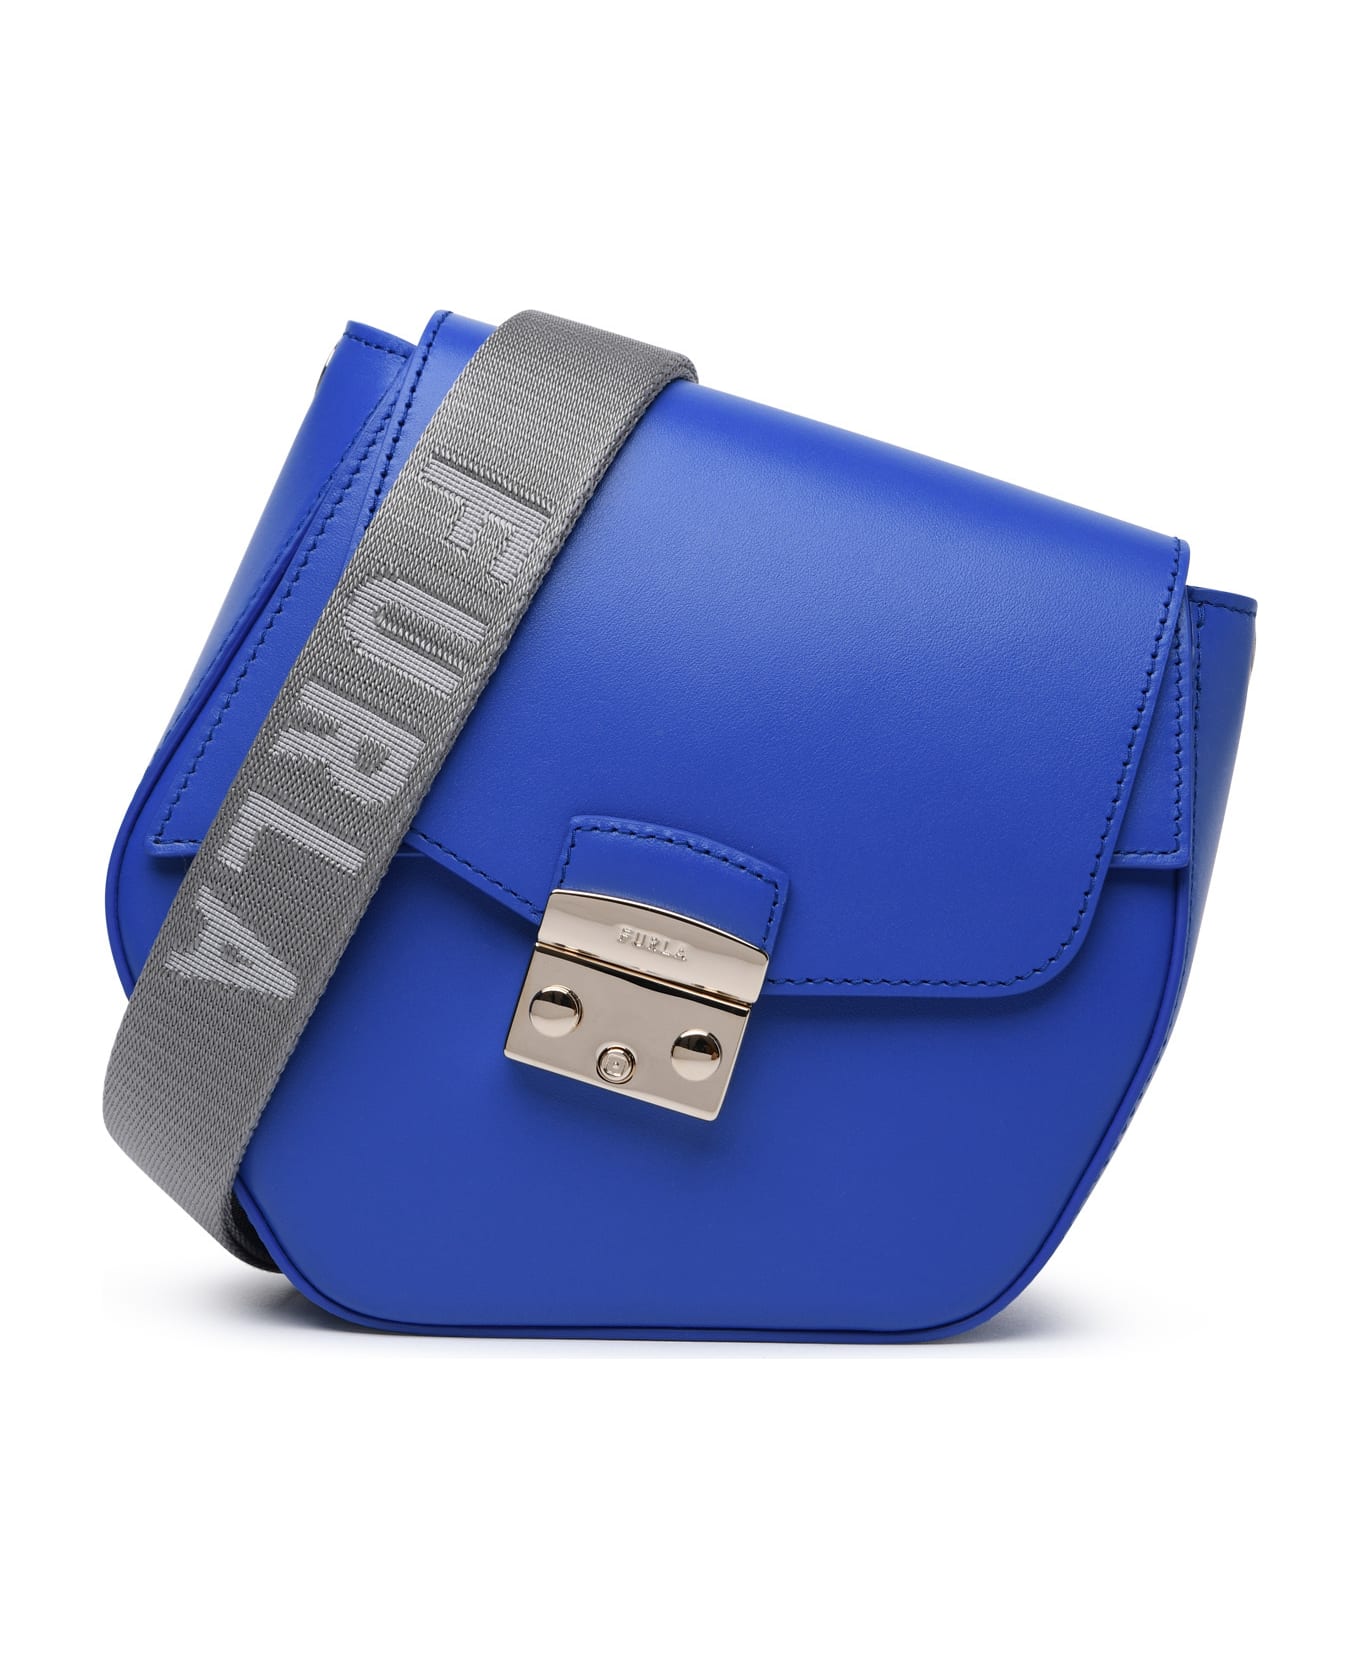 Furla 'metropolis Prisma' Blue Leather Blend Bag - Dolce & Gabbana Kids DG logo shoulder bag